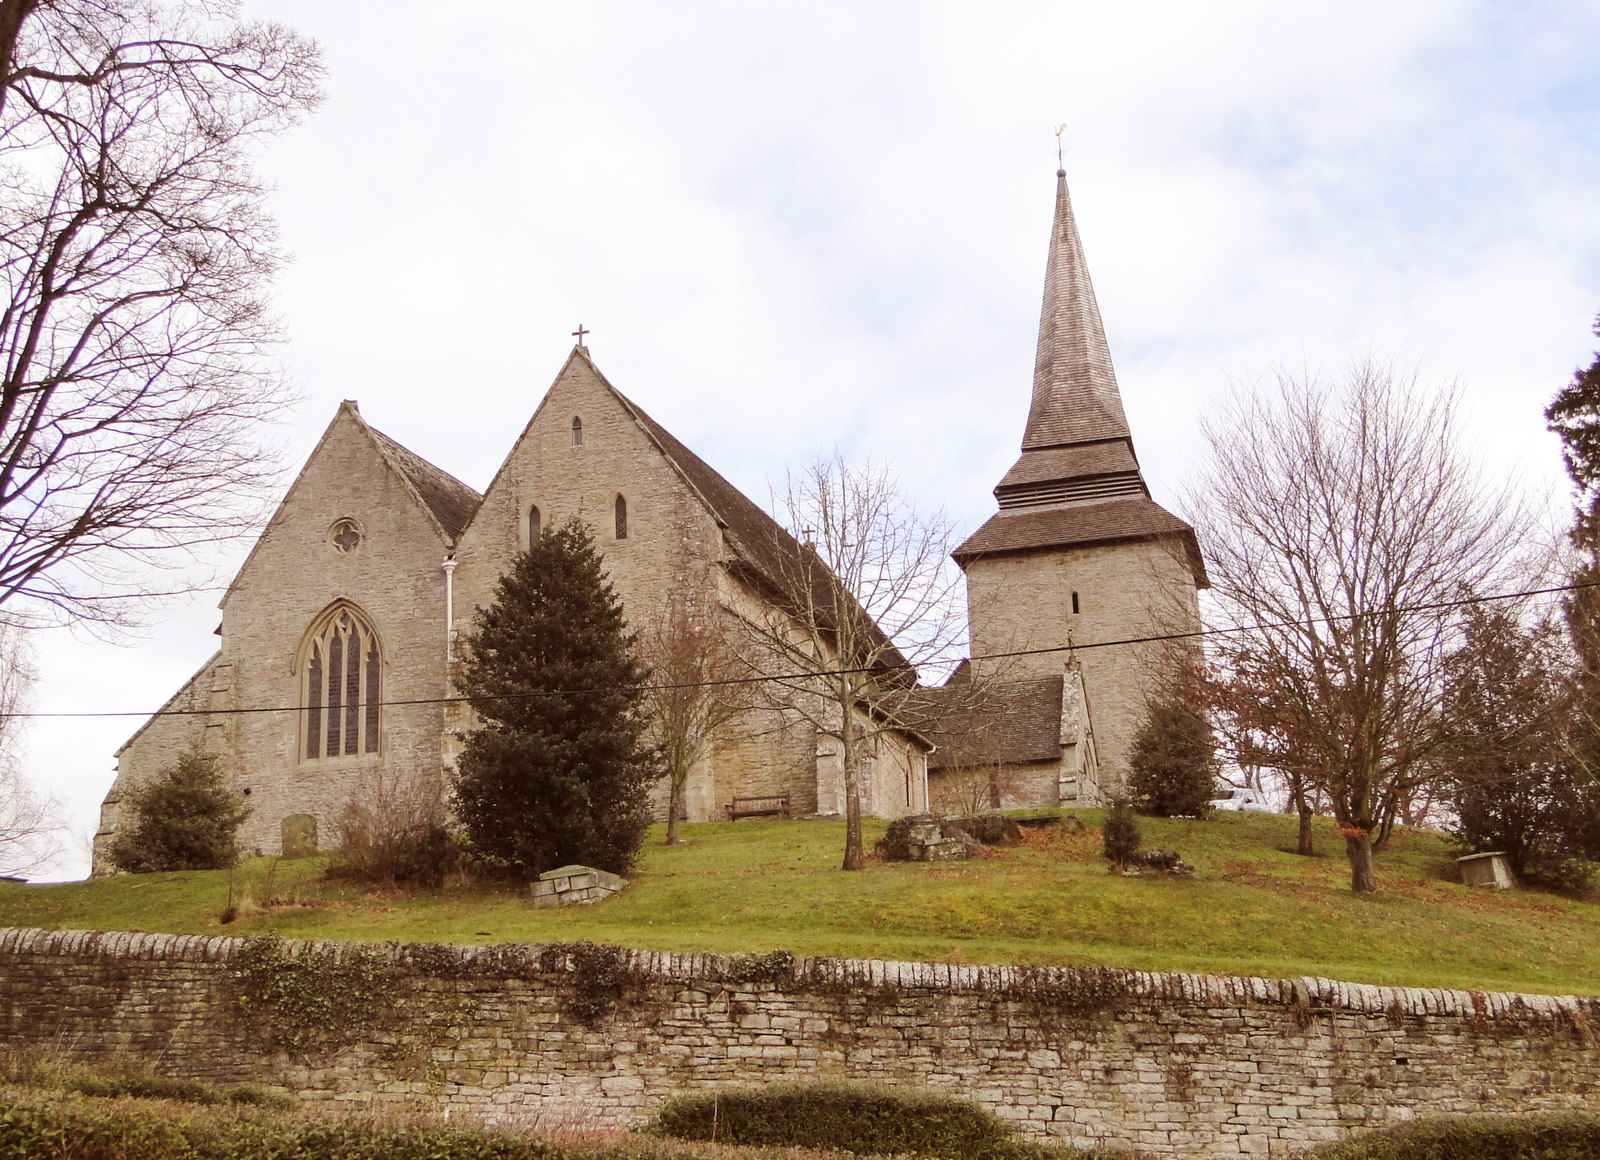 St Marys Church, Kington © 2016 Anne O'Brien